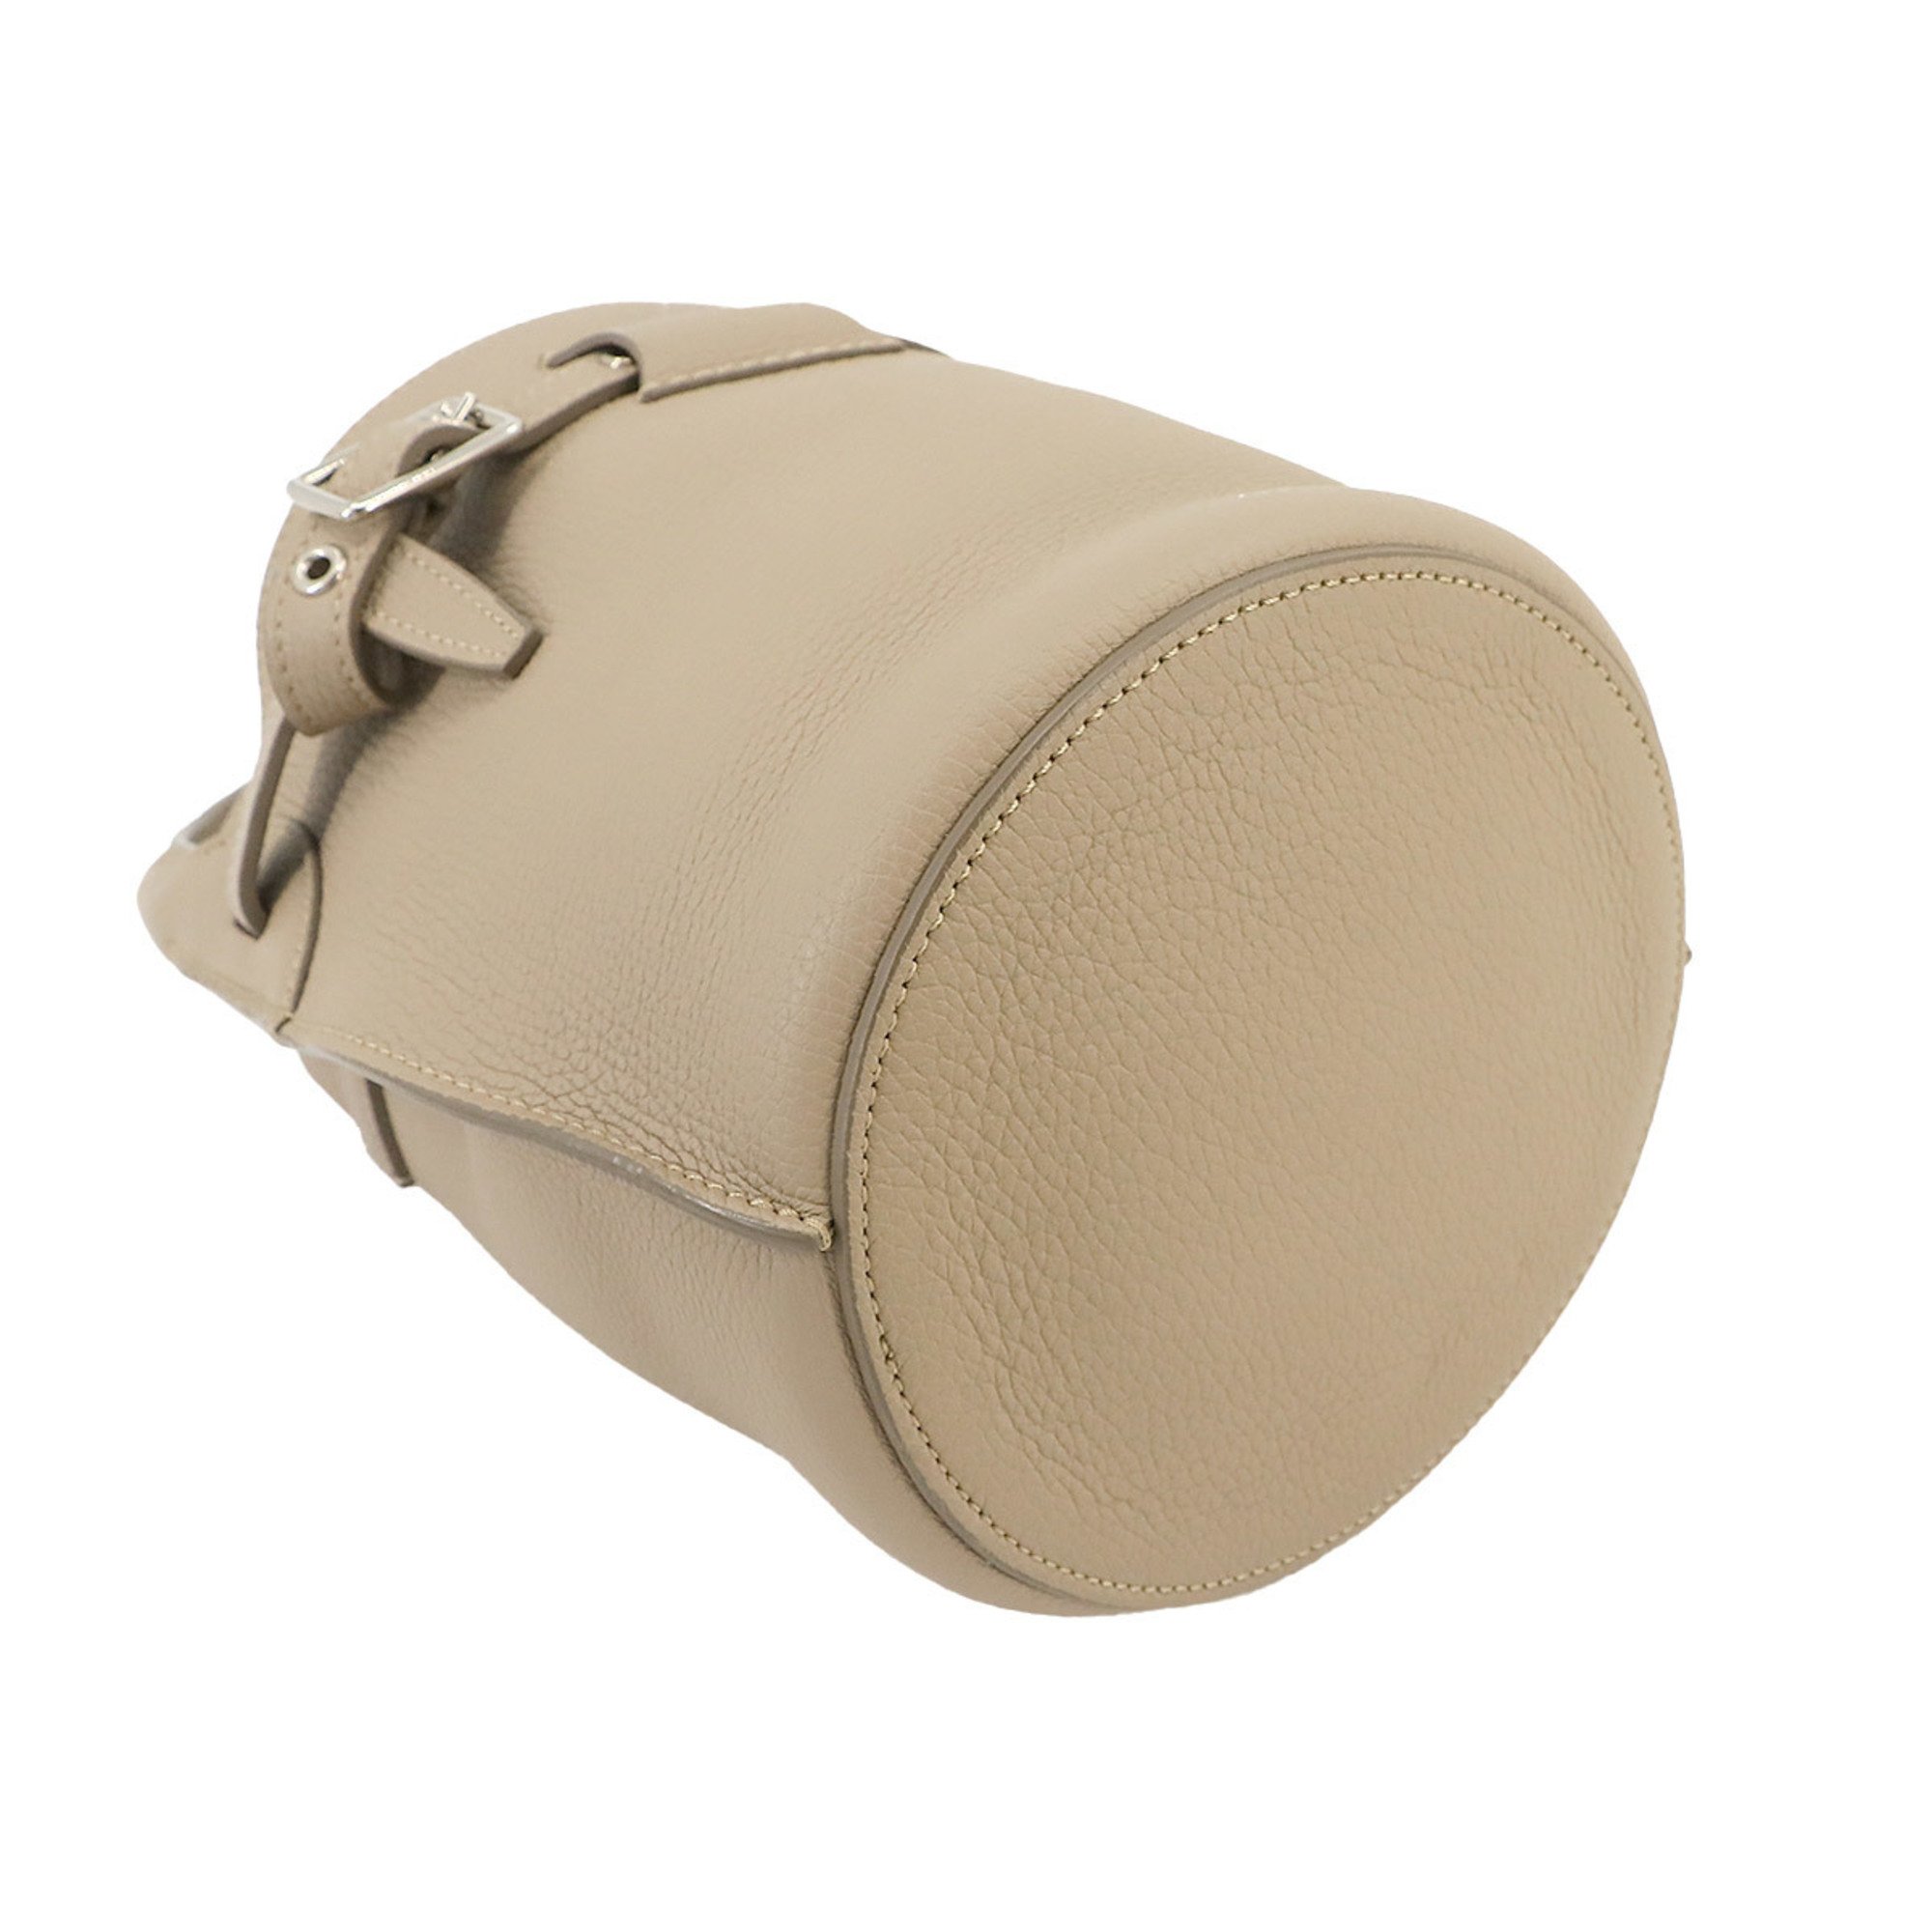 CELINE Big Bag Nano Bucket 2way Hand Shoulder Leather Beige 187243U Silver Hardware